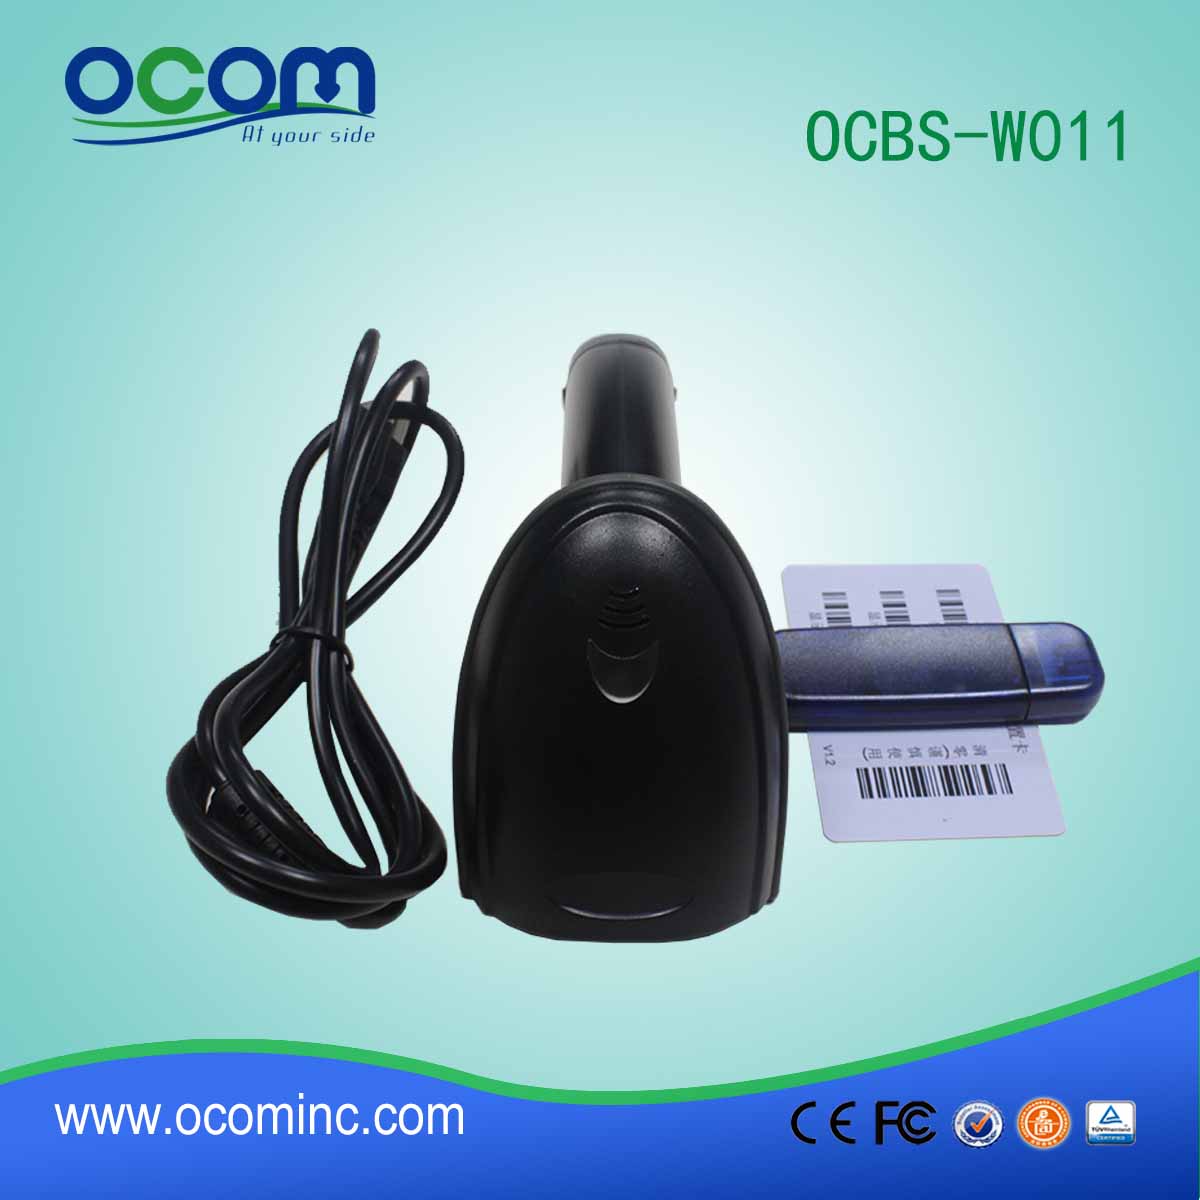 OCBS-W011 drahtlose Bluetooth-Barcode-Scanner mit USB-Anschluss